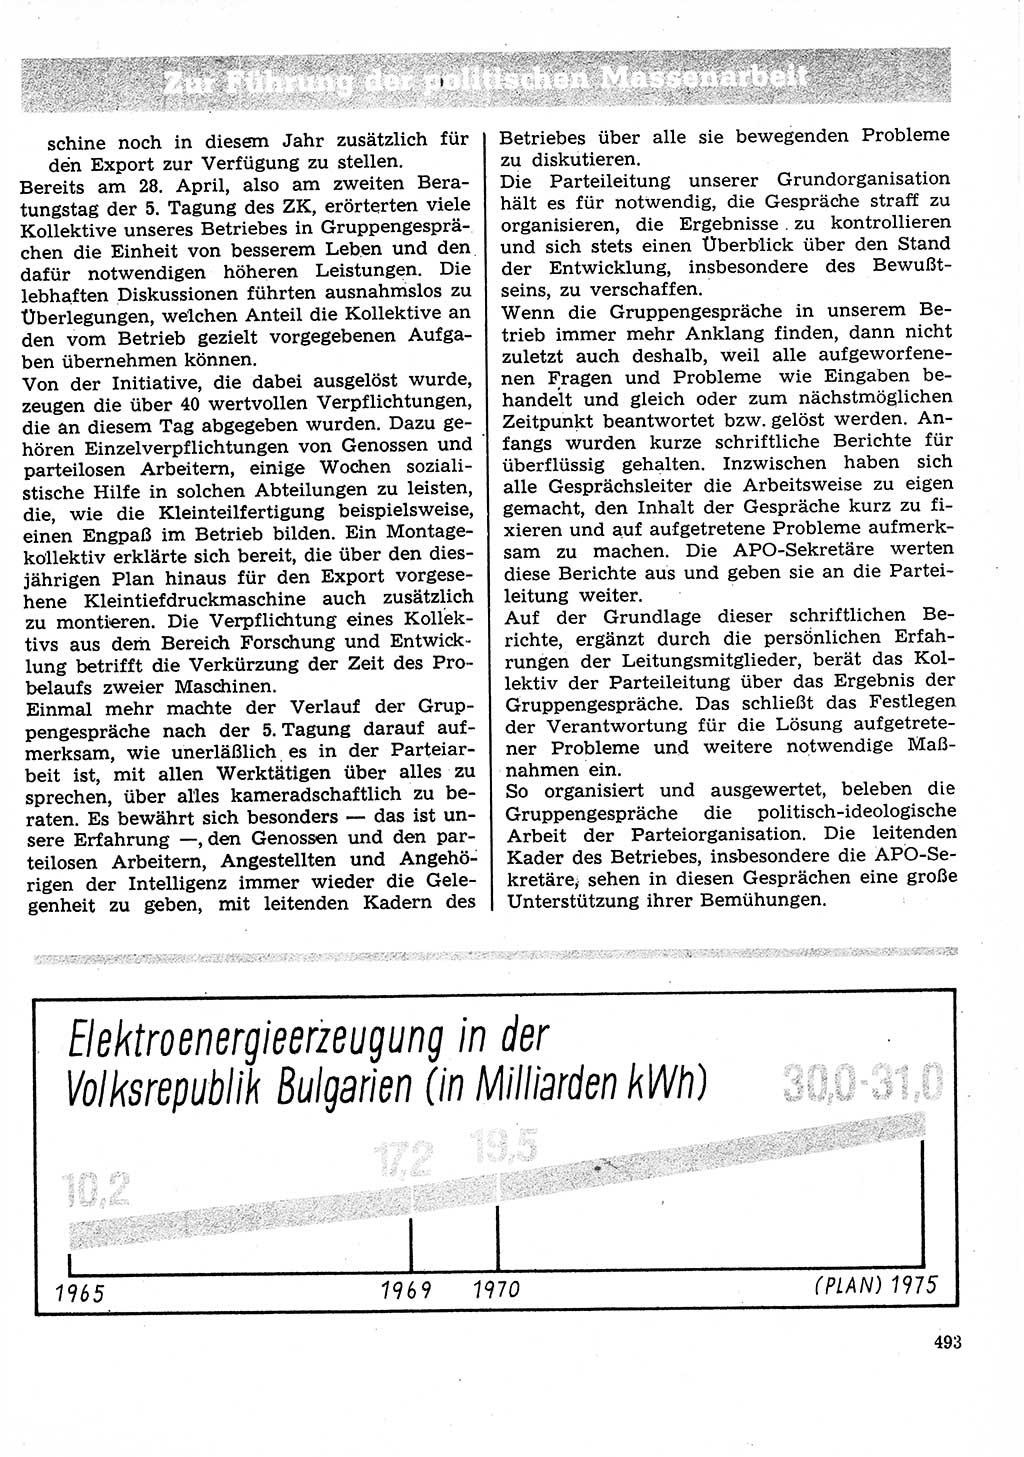 Neuer Weg (NW), Organ des Zentralkomitees (ZK) der SED (Sozialistische Einheitspartei Deutschlands) für Fragen des Parteilebens, 27. Jahrgang [Deutsche Demokratische Republik (DDR)] 1972, Seite 493 (NW ZK SED DDR 1972, S. 493)